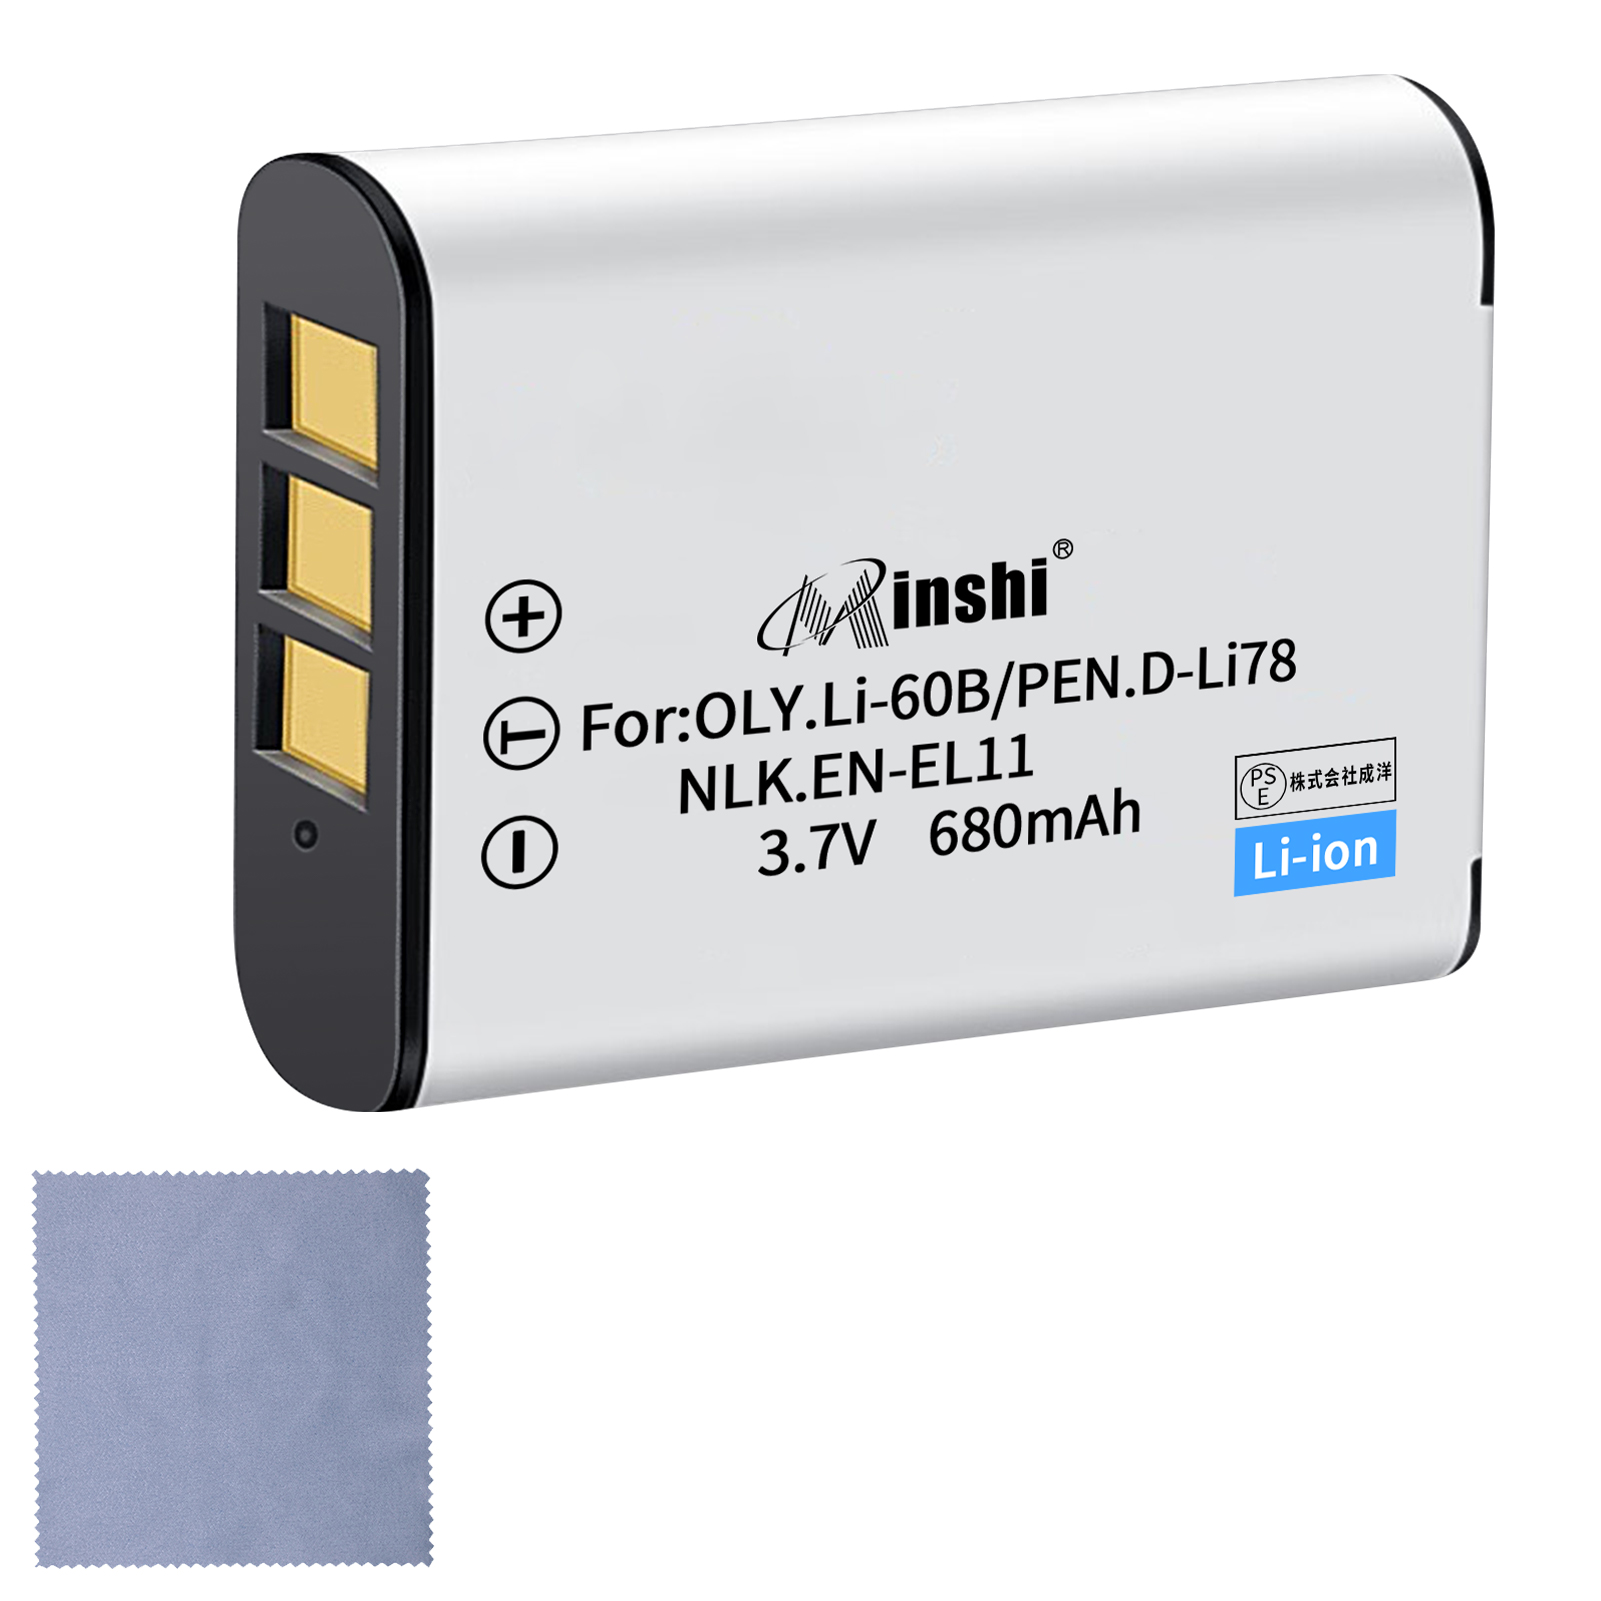 【クロス付き】minshi NIKON Optio W60 EN-EL11 【680mAh 3.7V】PSE認定済 高品質交換用バッテリー オリジナル充電器との互換性がない